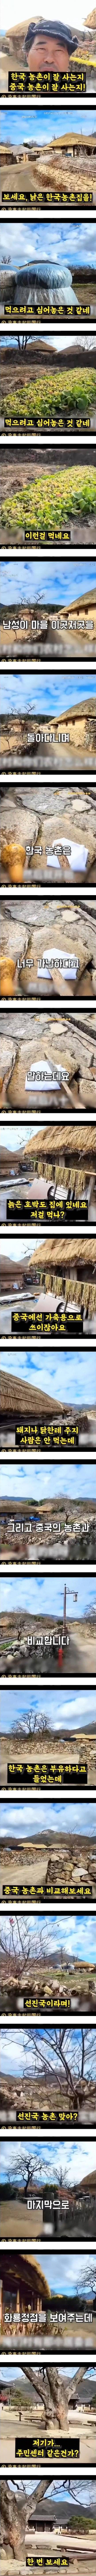 한국 농촌의 실상이라며 중국에 올라온 영상 - 7